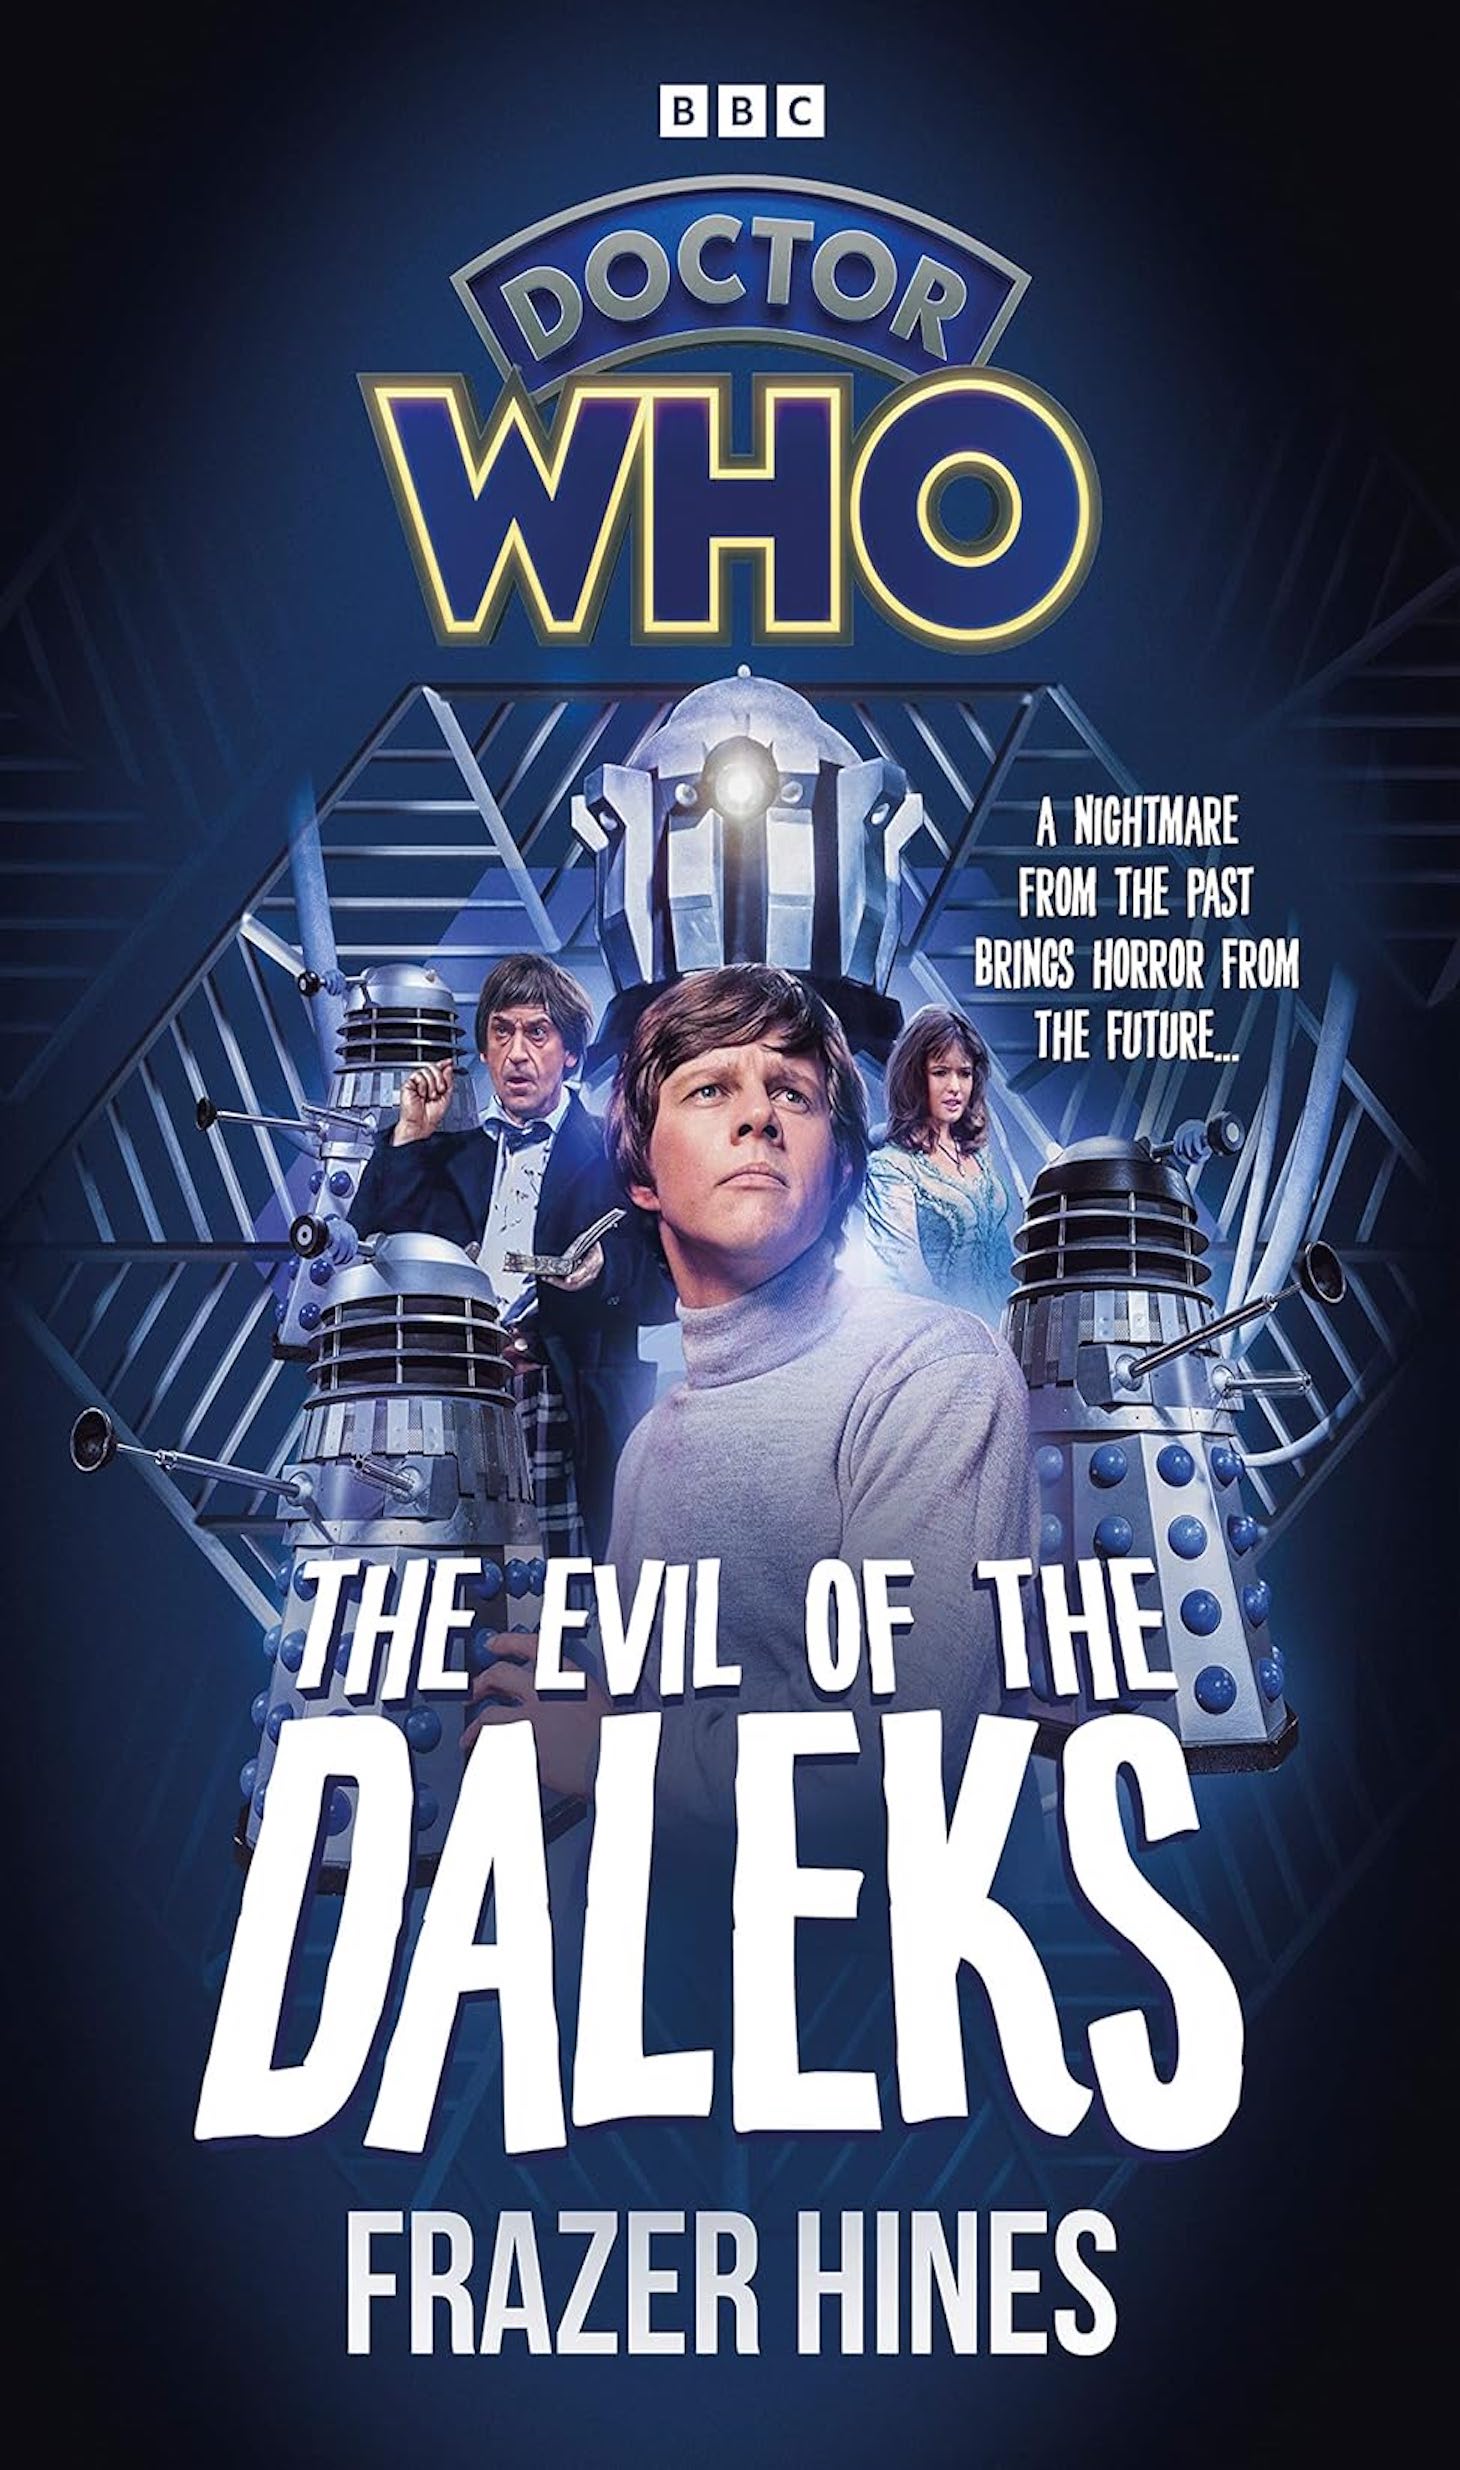 Doctor Who: The Evil of the Daleks Novelisation